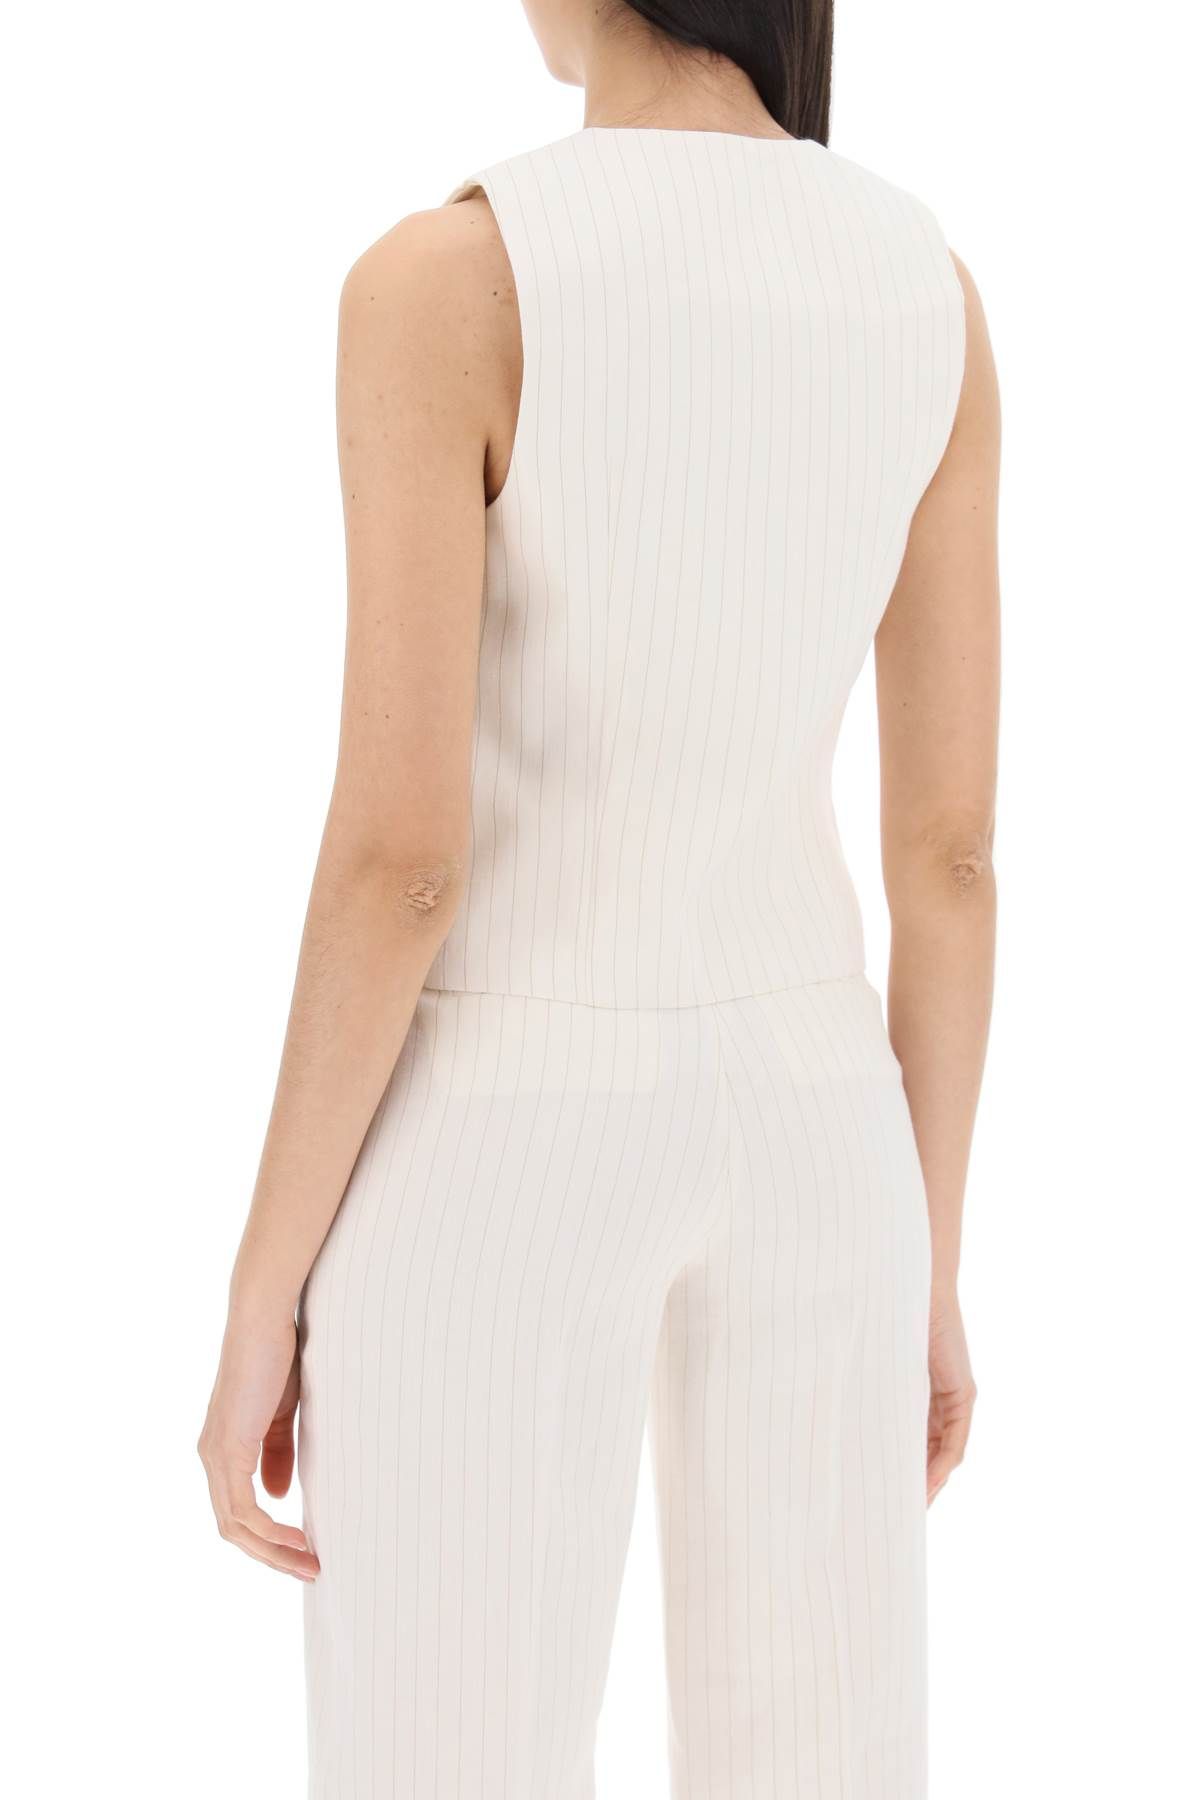 Shop Mvp Wardrobe Monaco Single-breasted In White,neutro